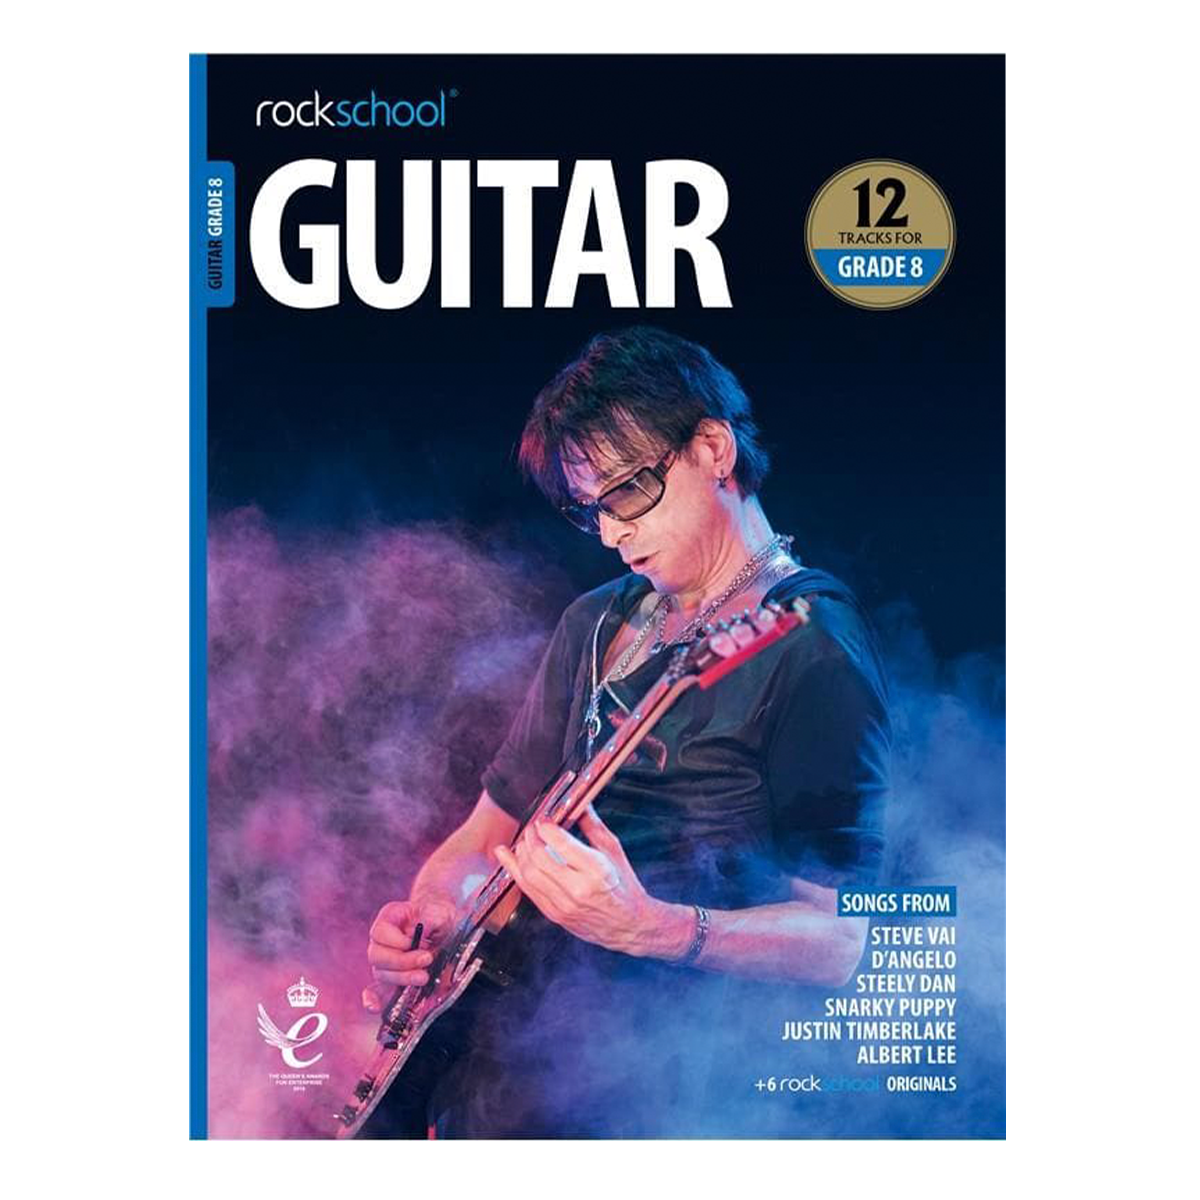 Rockschool Guitar Grade 8 (2018)